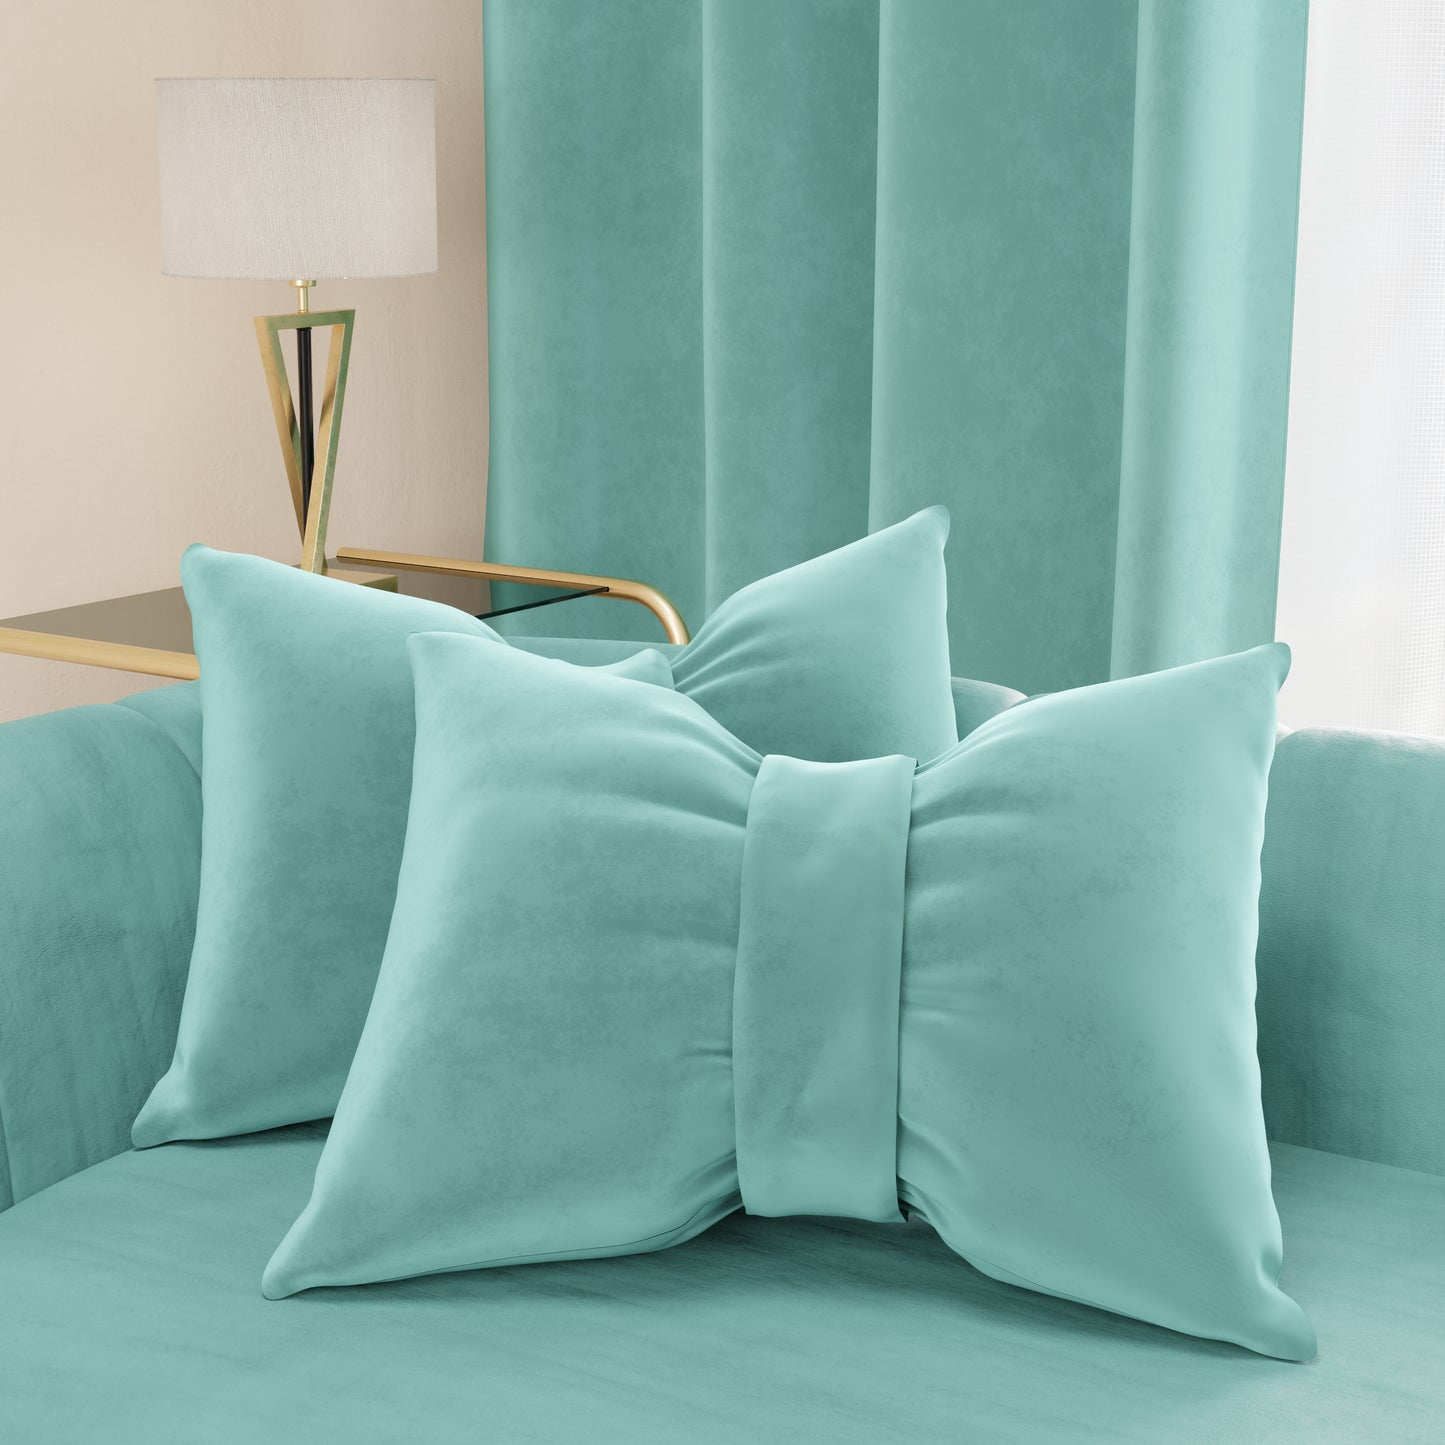 Cuscino Arredo Fiocco in Velluto 40x50 cm, Cuscino divano Tiffany